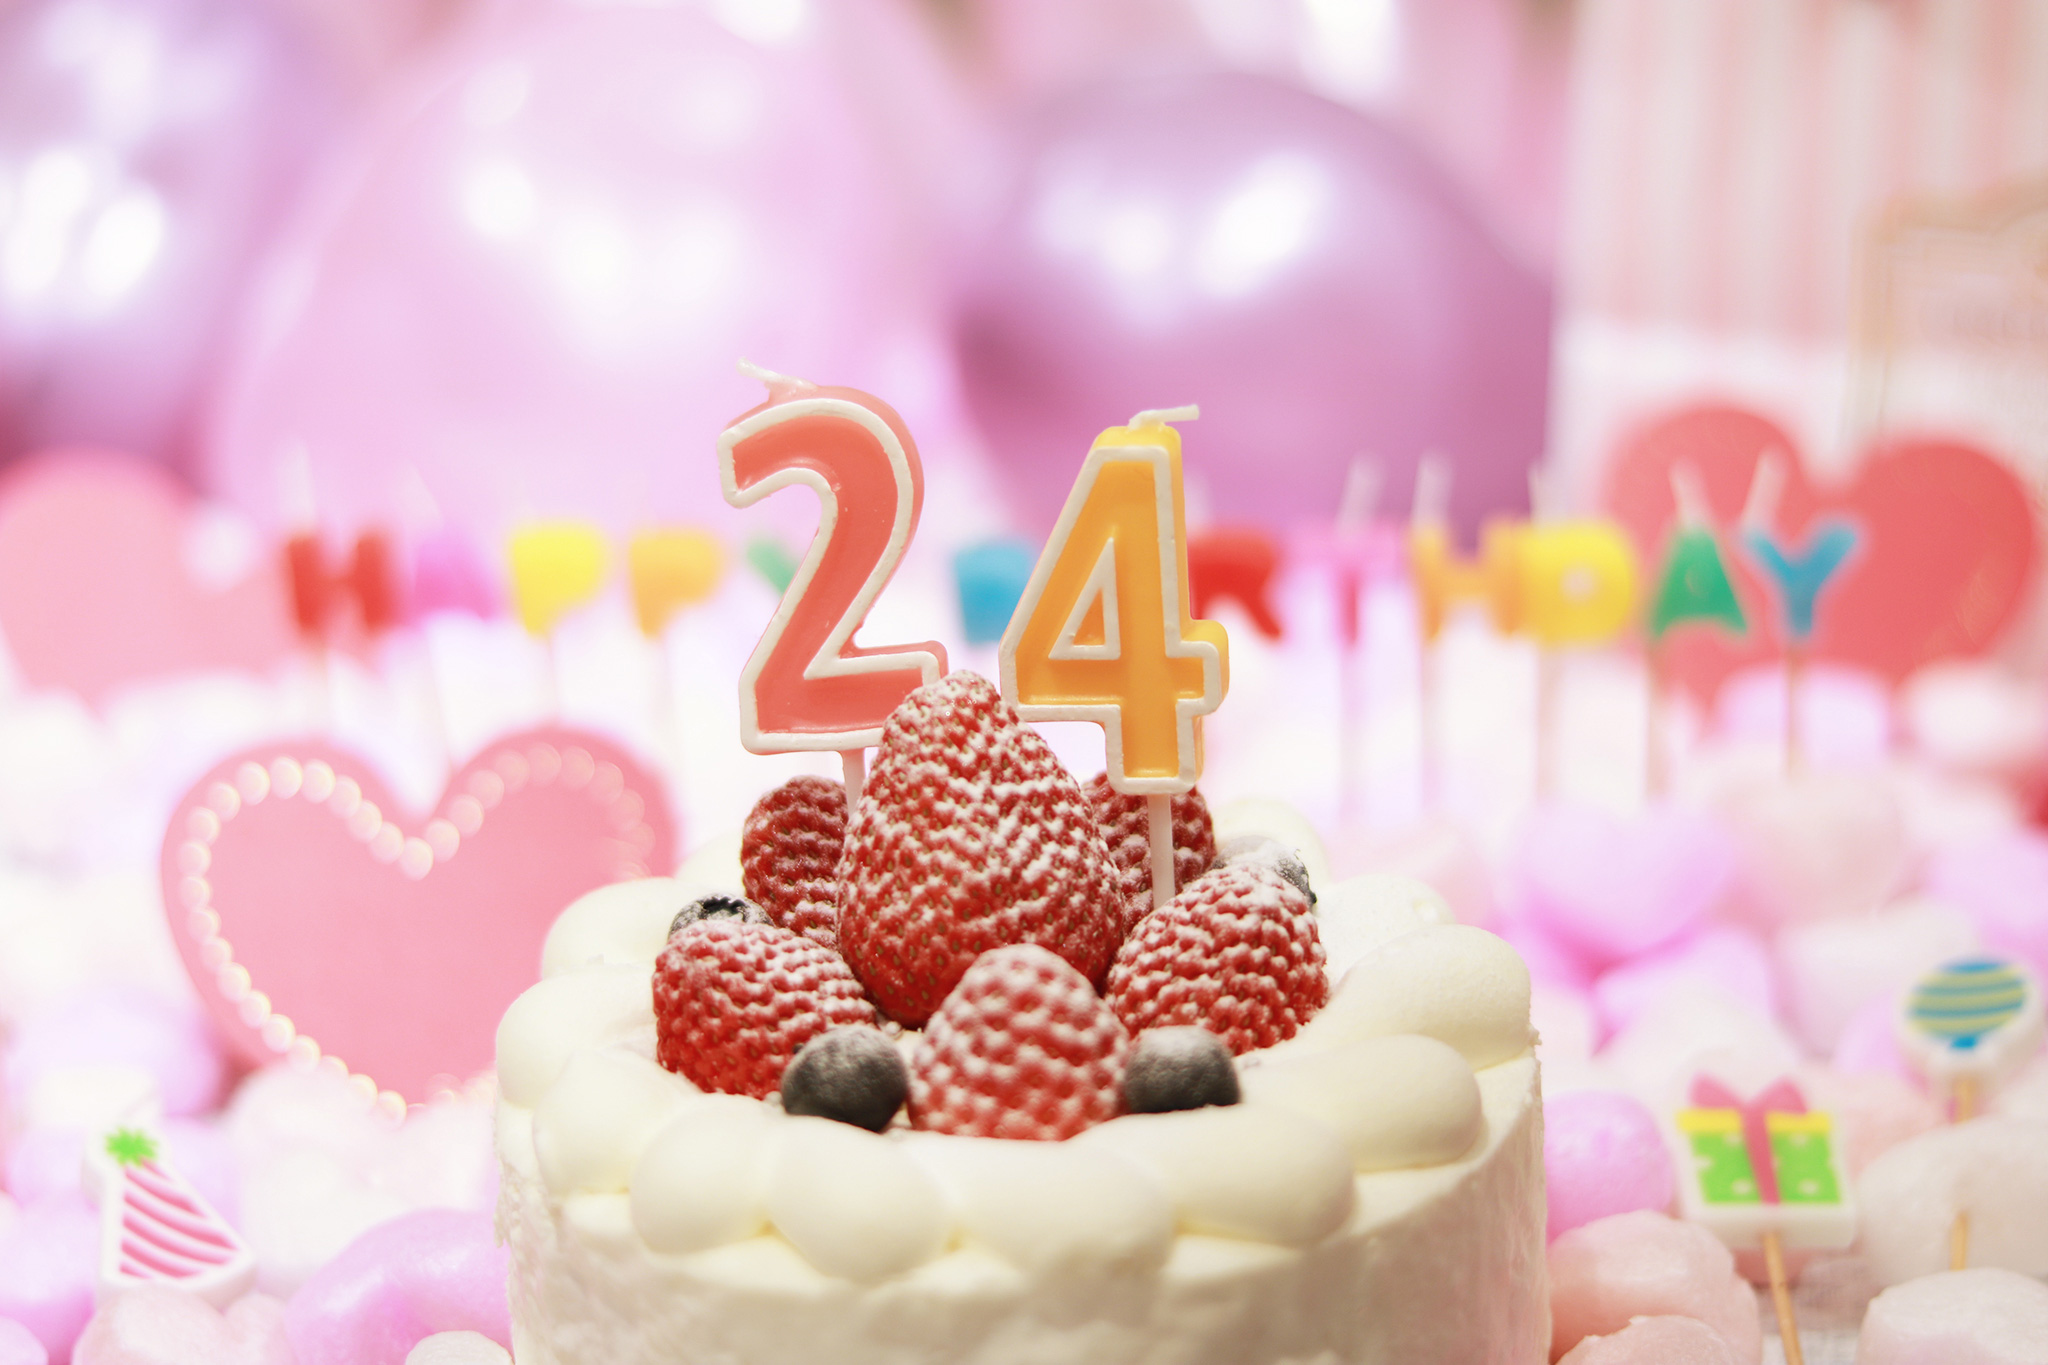 オシャレな誕生日画像 可愛いケーキとキャンドルでお祝い 24歳編 のフリー画像 おしゃれなフリー写真素材 Girly Drop